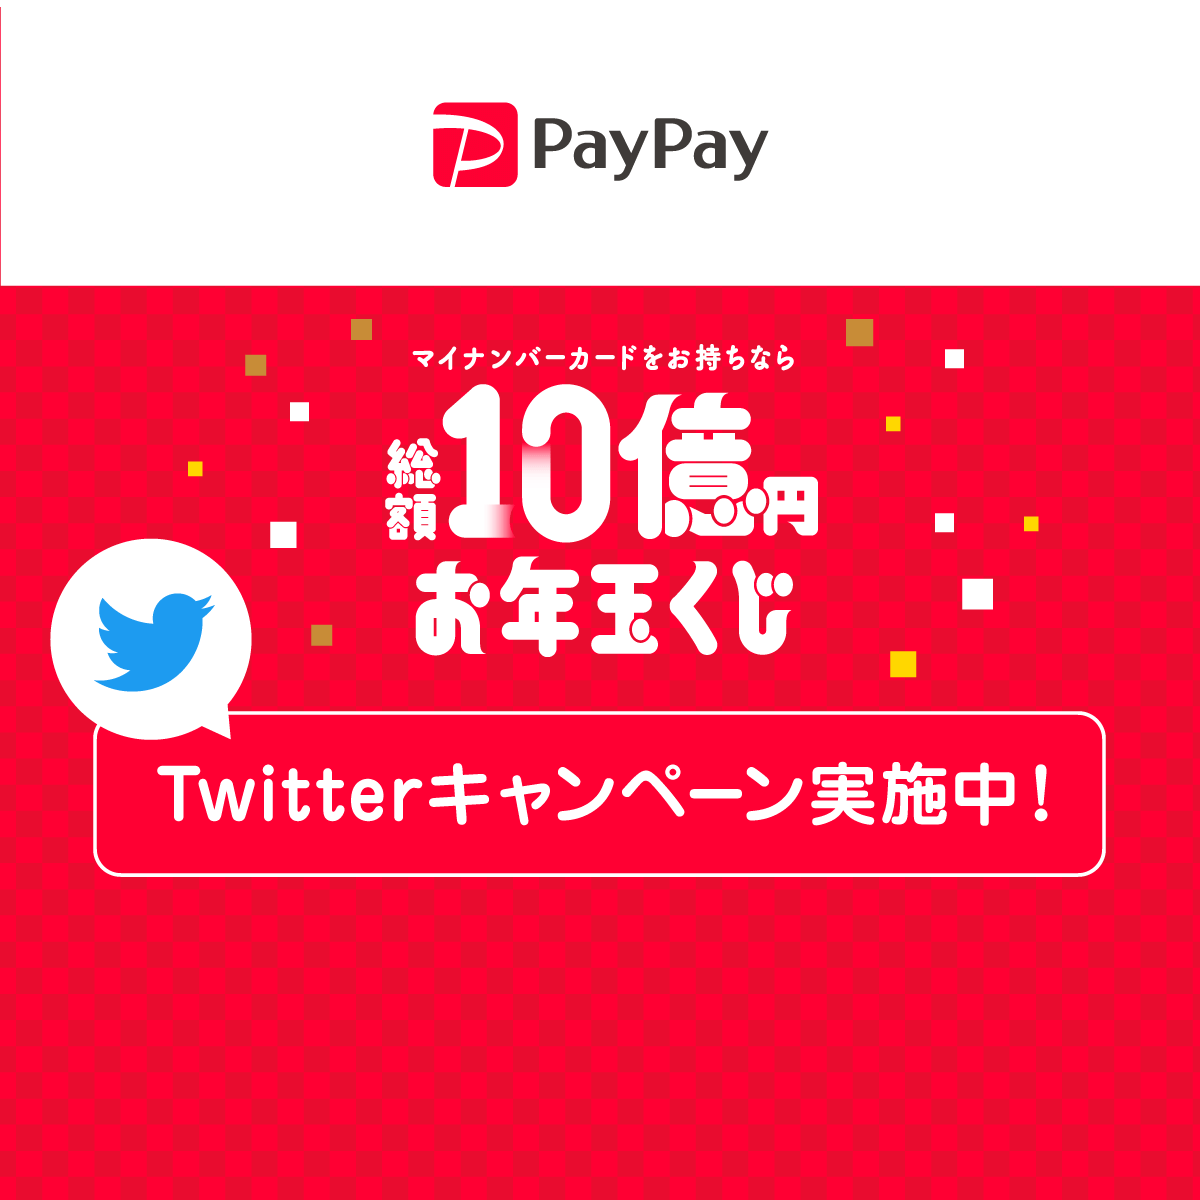 PayPay_総額10億円お年玉くじ_1200×1200のバナーデザイン